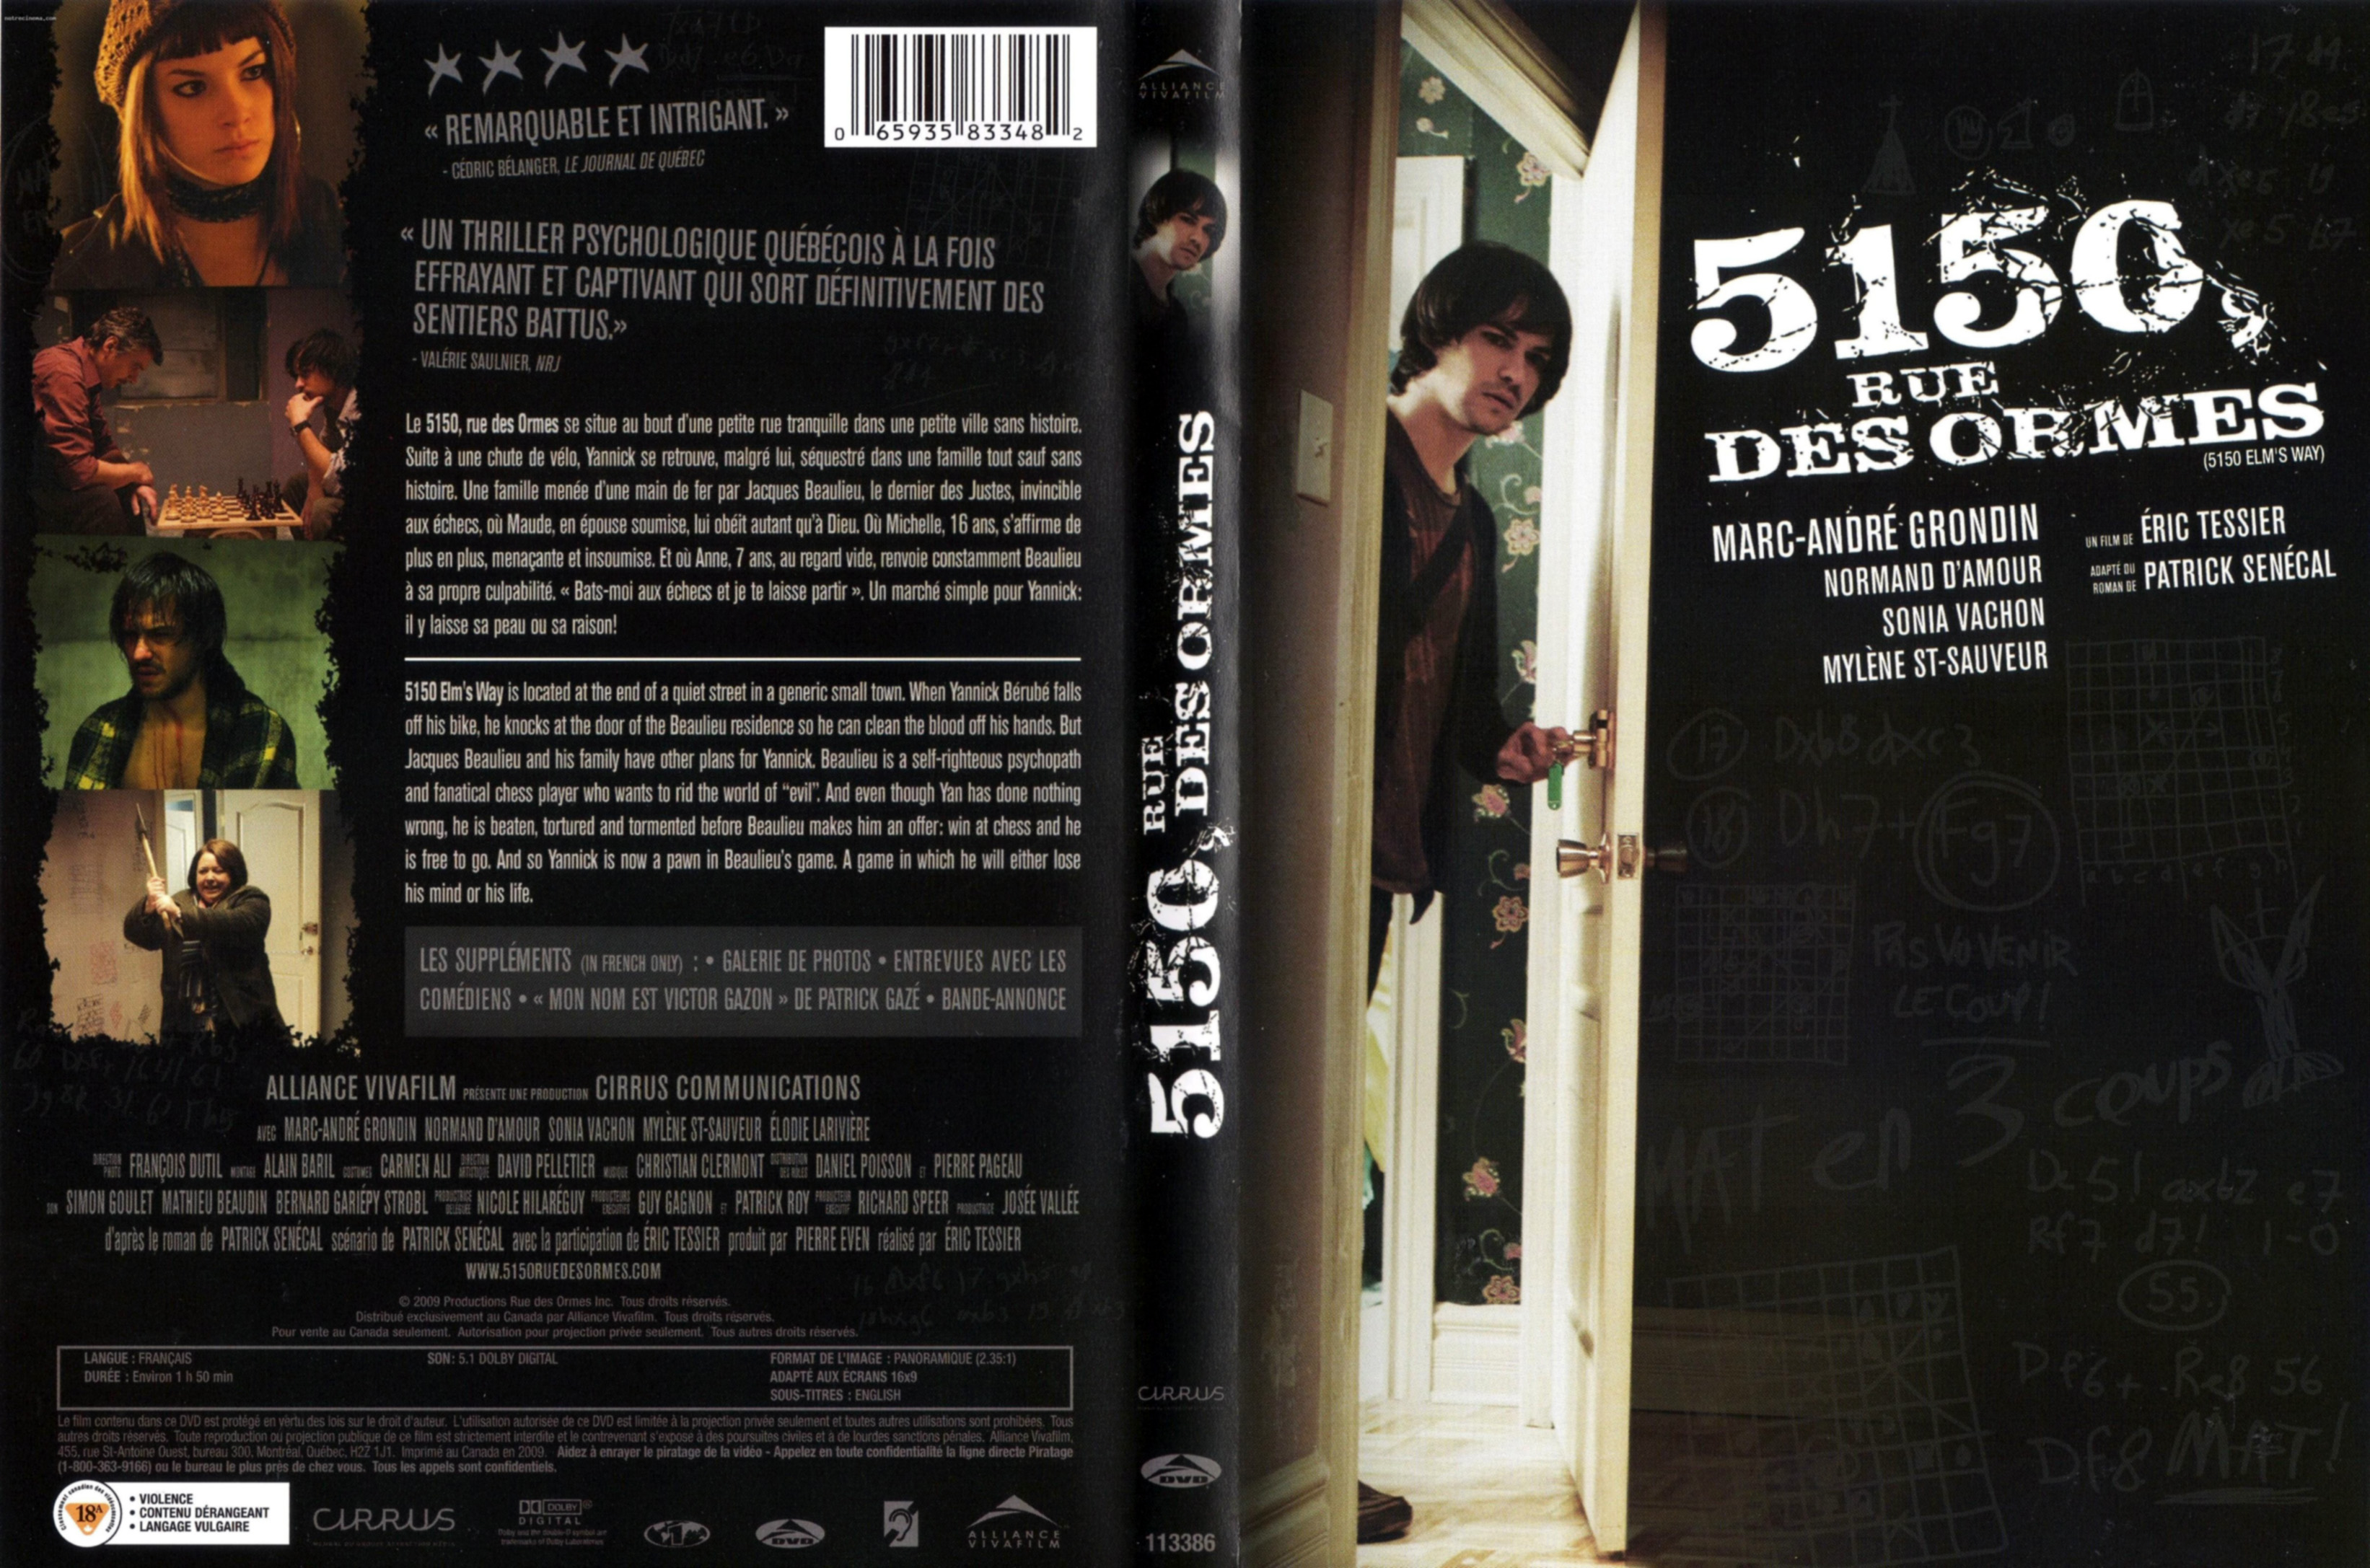 Jaquette DVD 5150 rue des ormes (Canadienne)